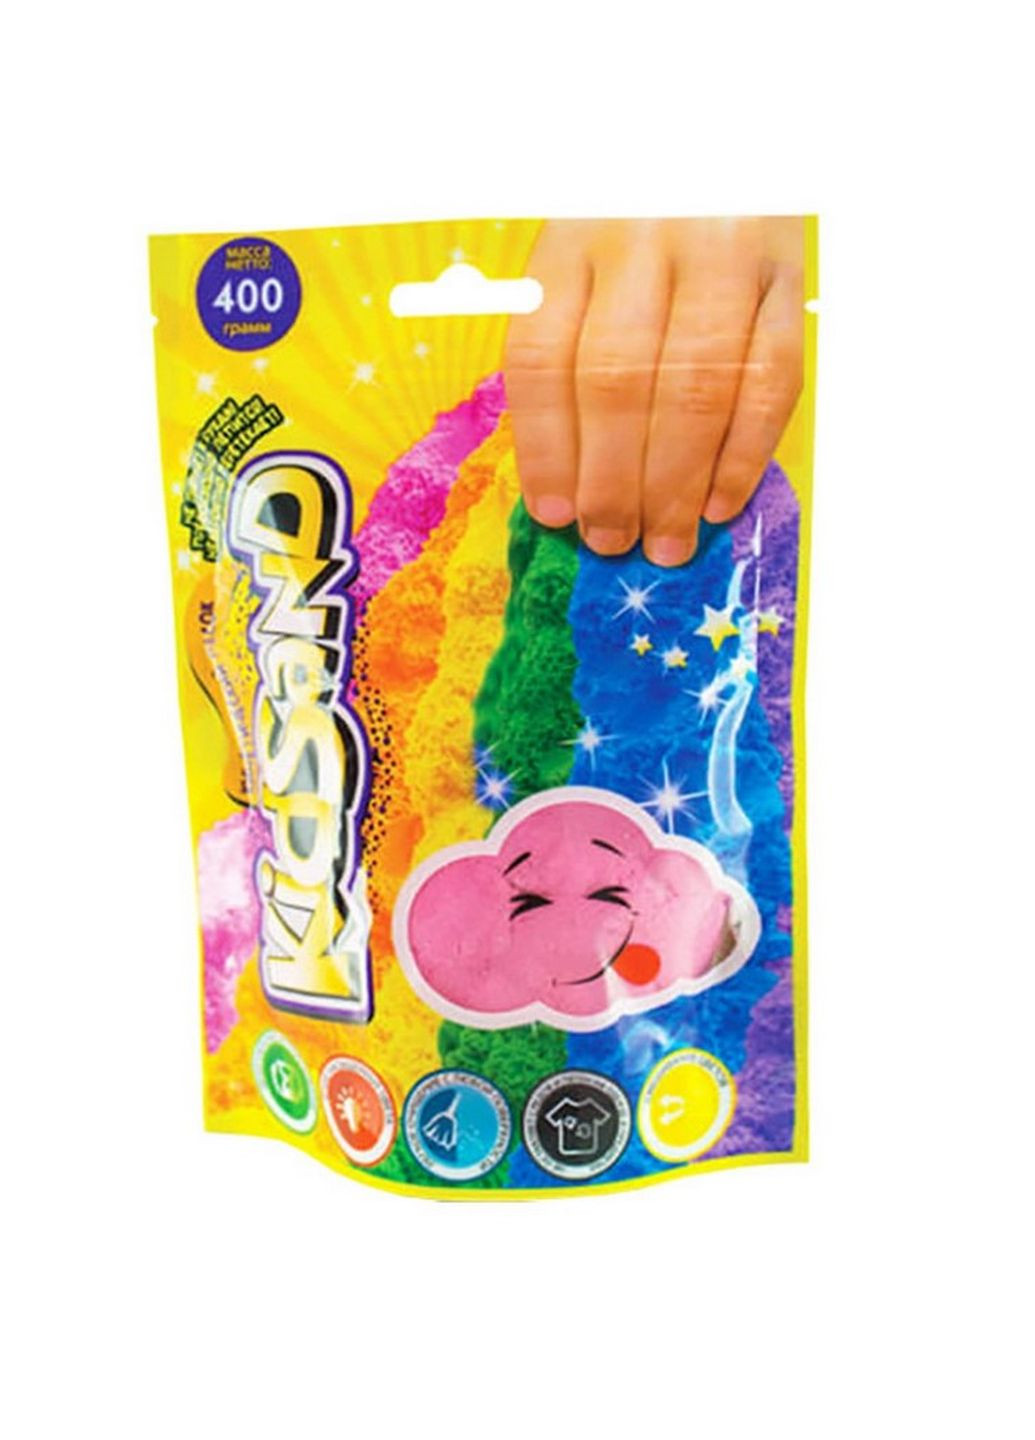 Кинетический песок "KidSand" KS-03-03 пакет 400 гр (Розовый) Danko Toys (266631732)